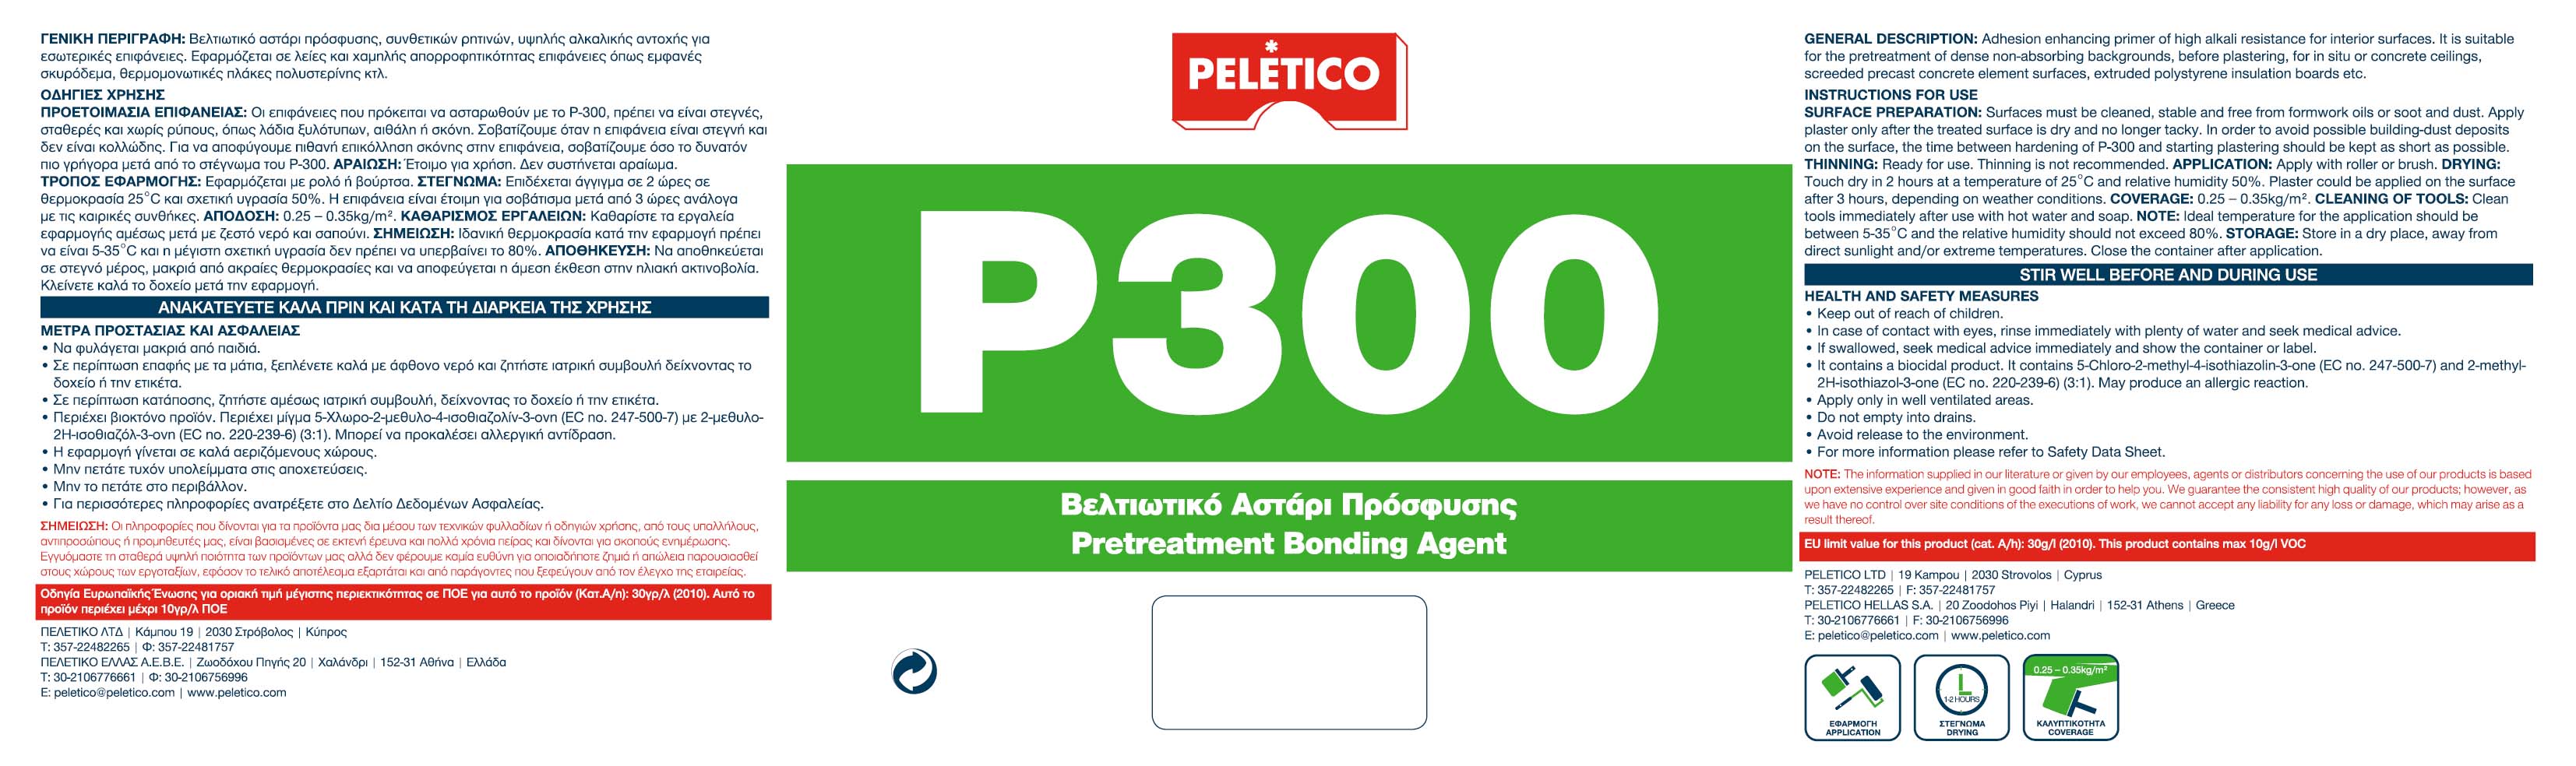 P-300 10KG (PRETREATMENT BONDING AGENT)